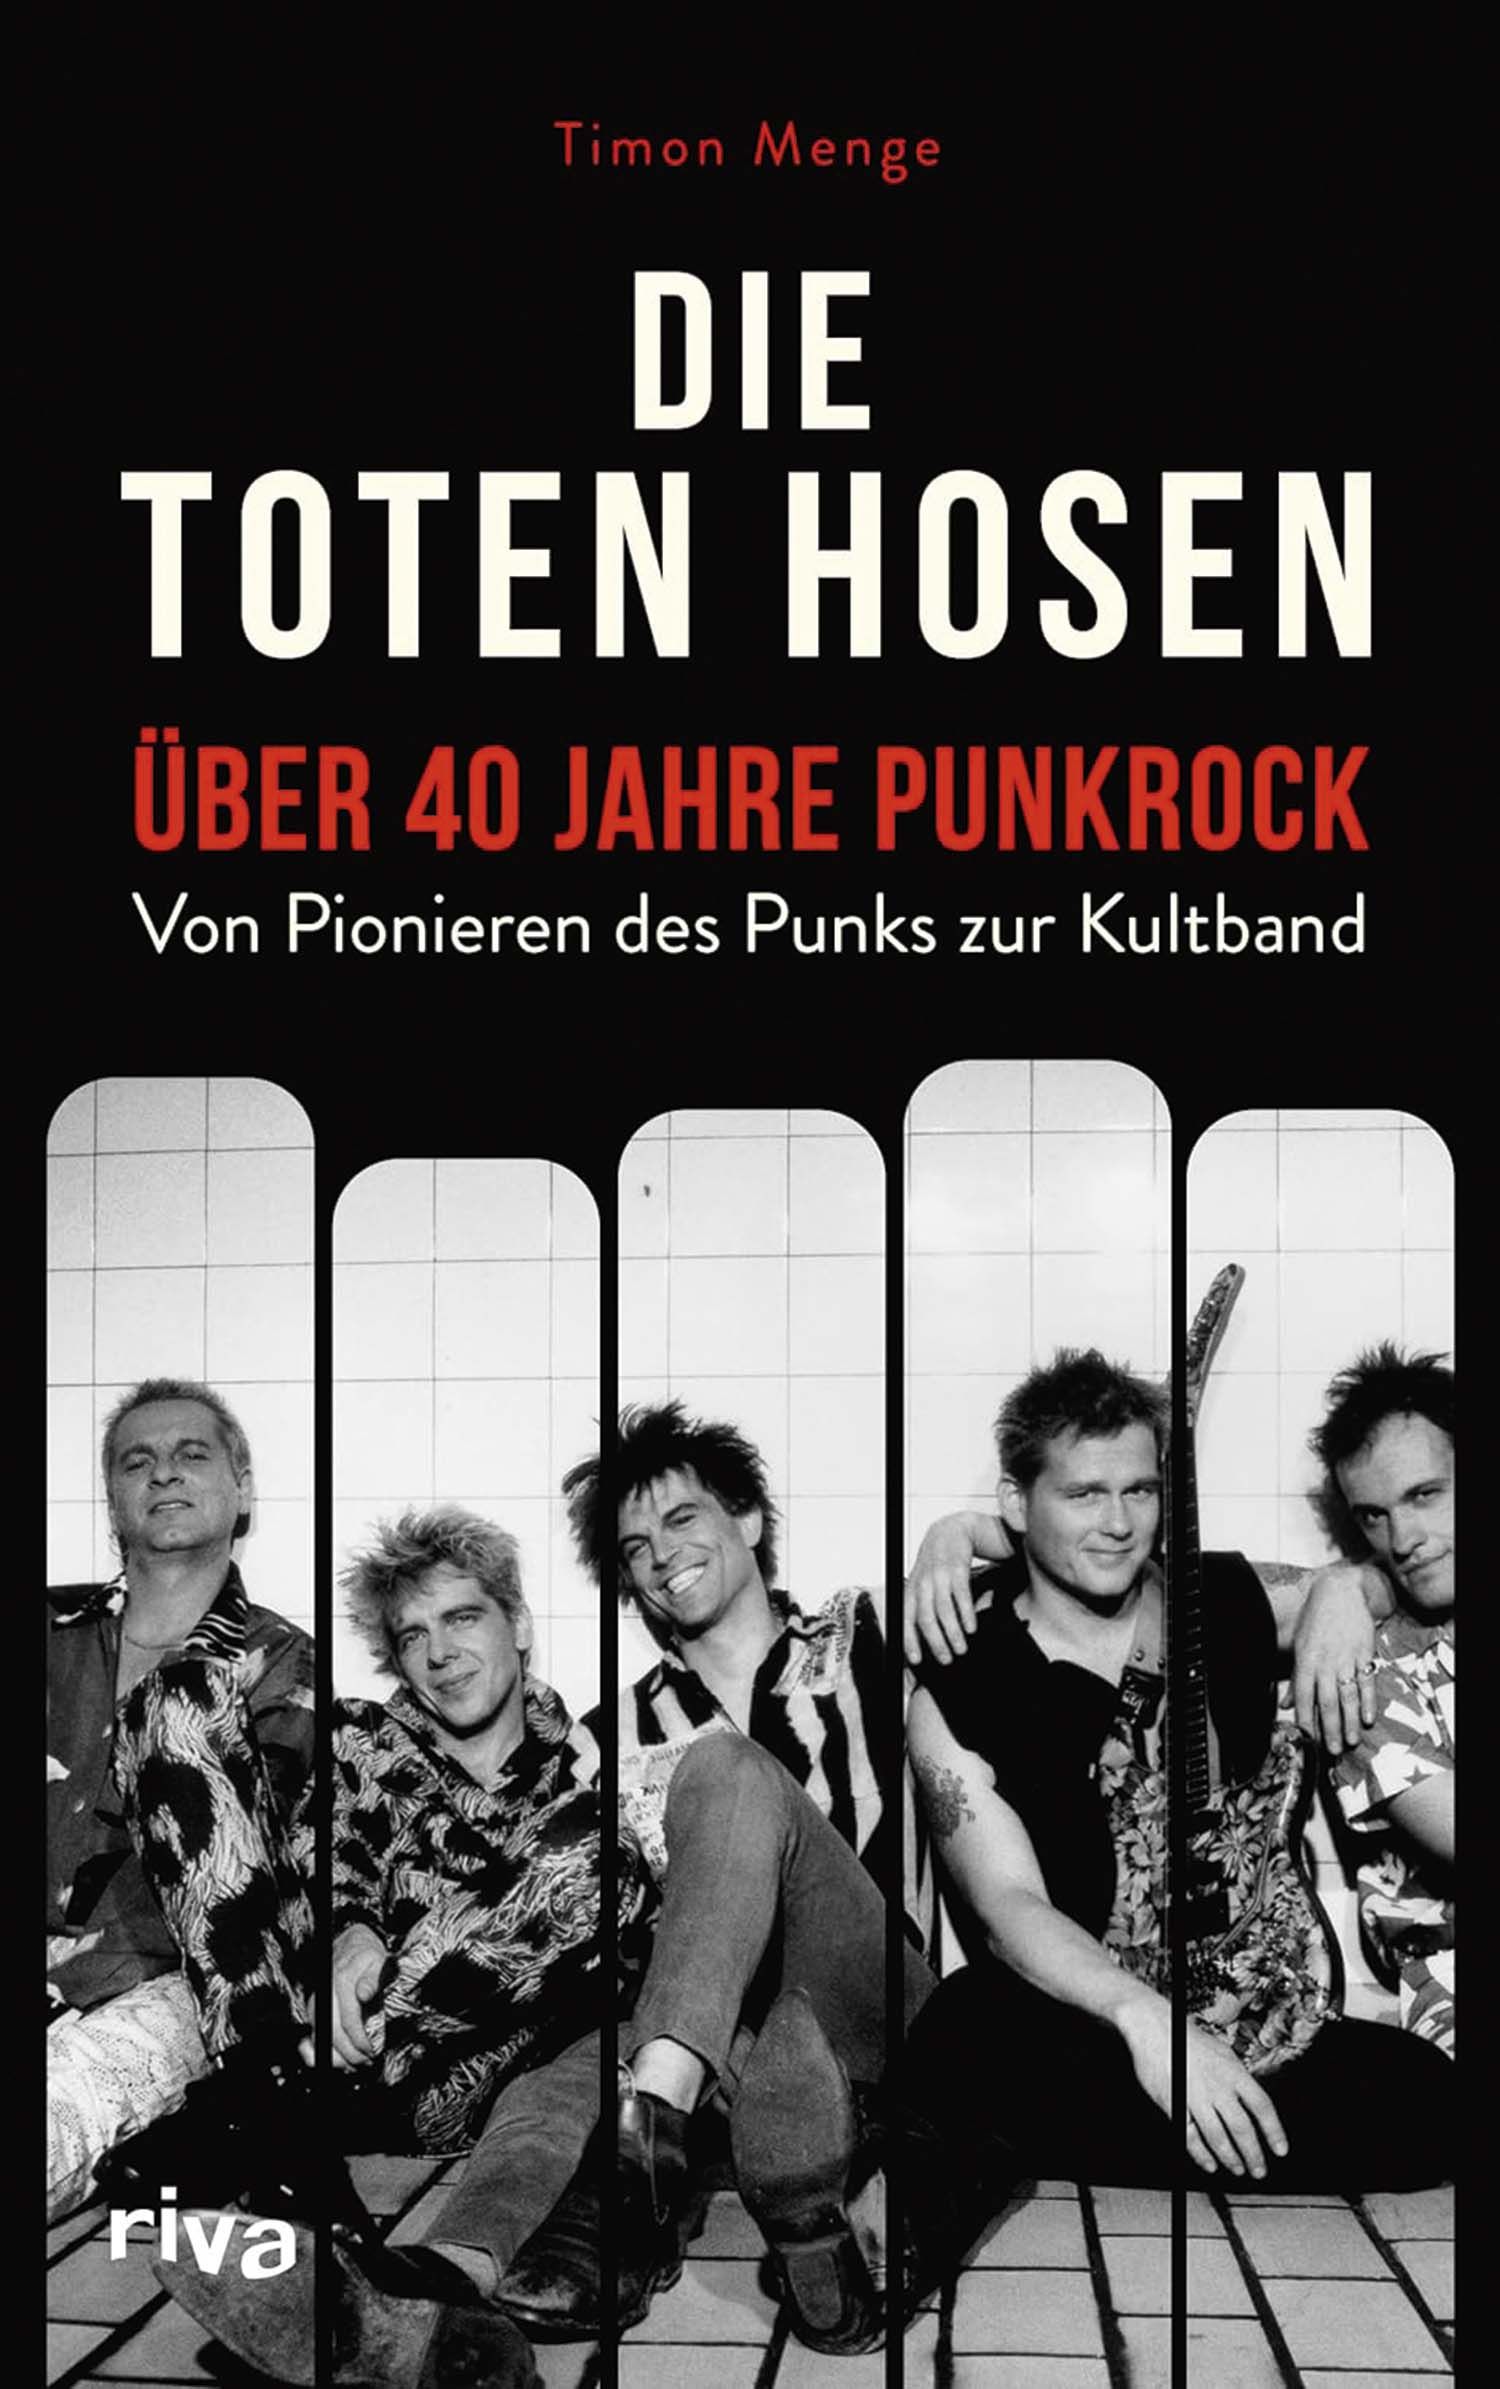 Über 40 Jahre Punkrock - Von Pionieren des Punks zur Kultband